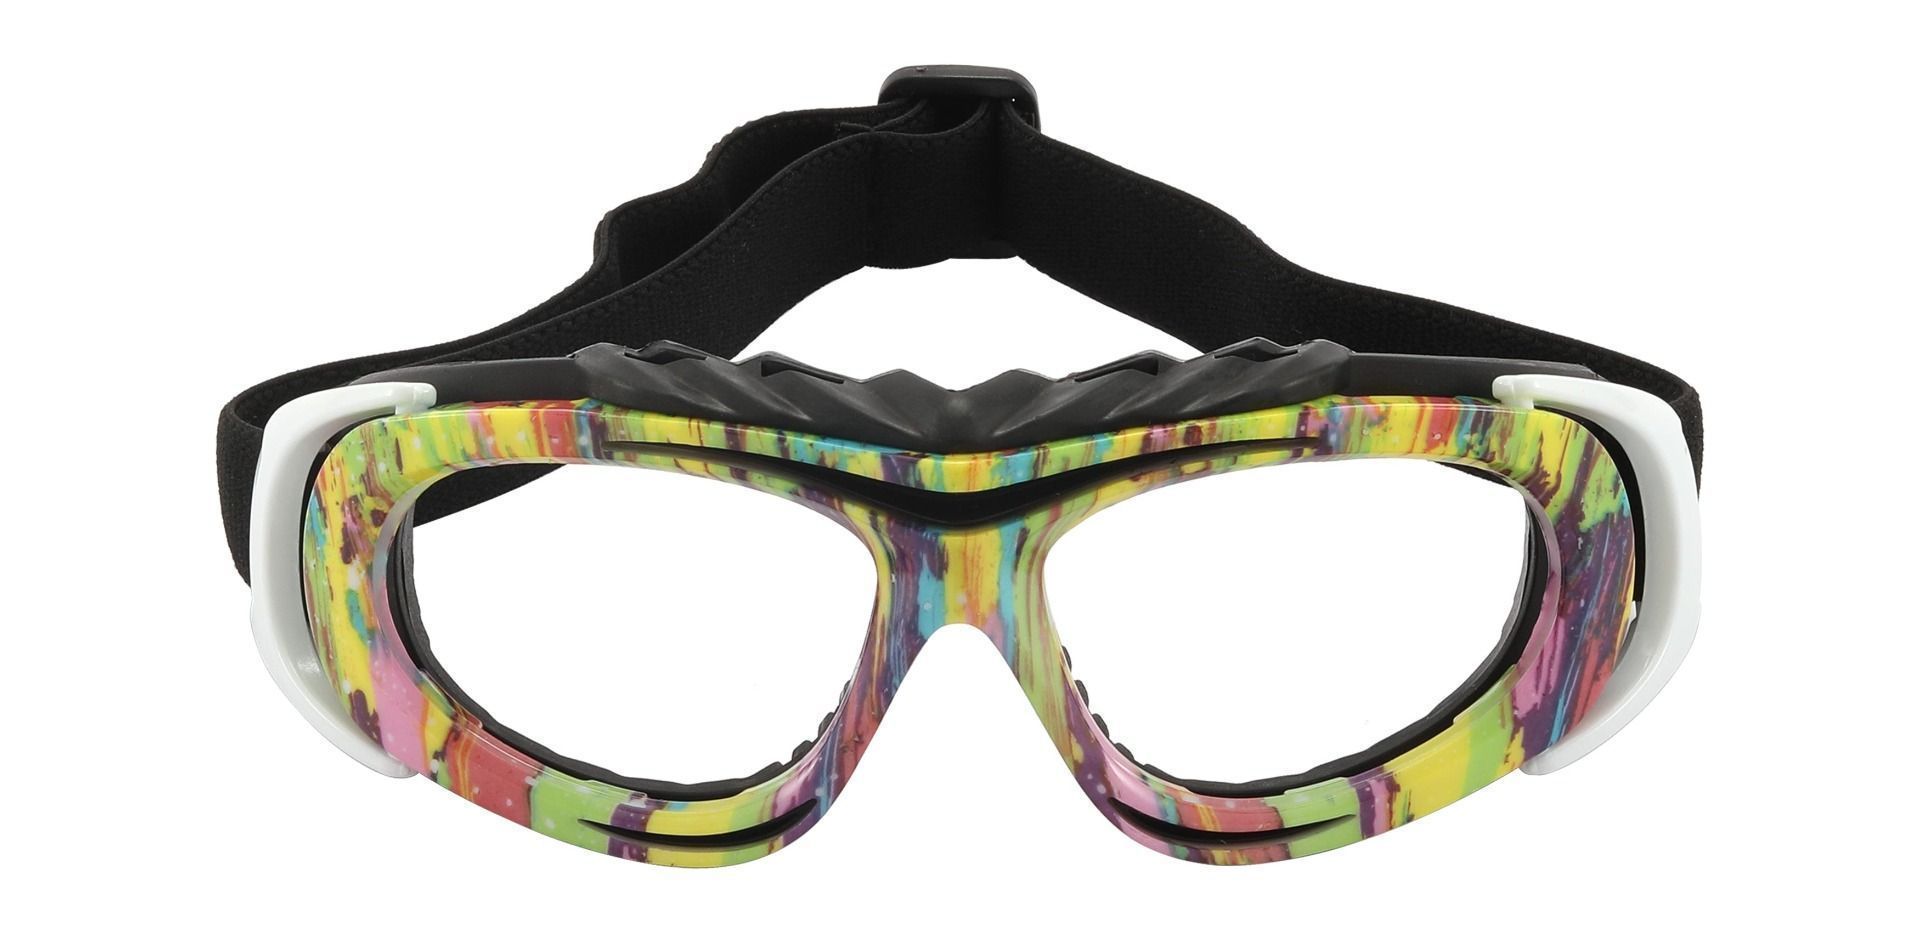 Reston Sports Goggles Prescription Glasses - Floral